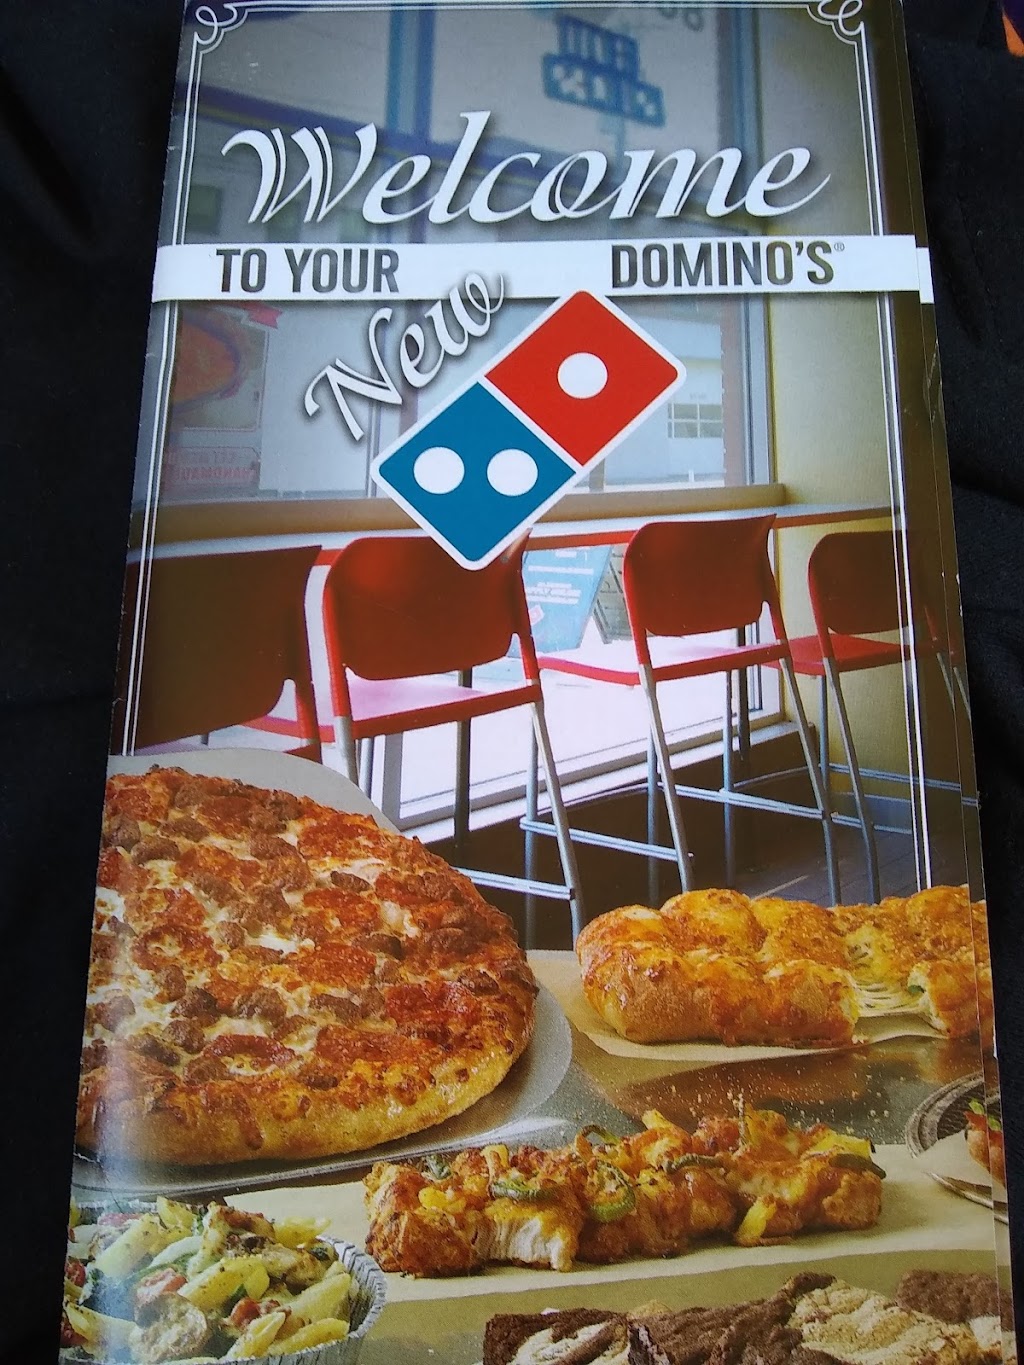 Dominos Pizza | 440 E 14th St, New York, NY 10009 | Phone: (212) 473-3030